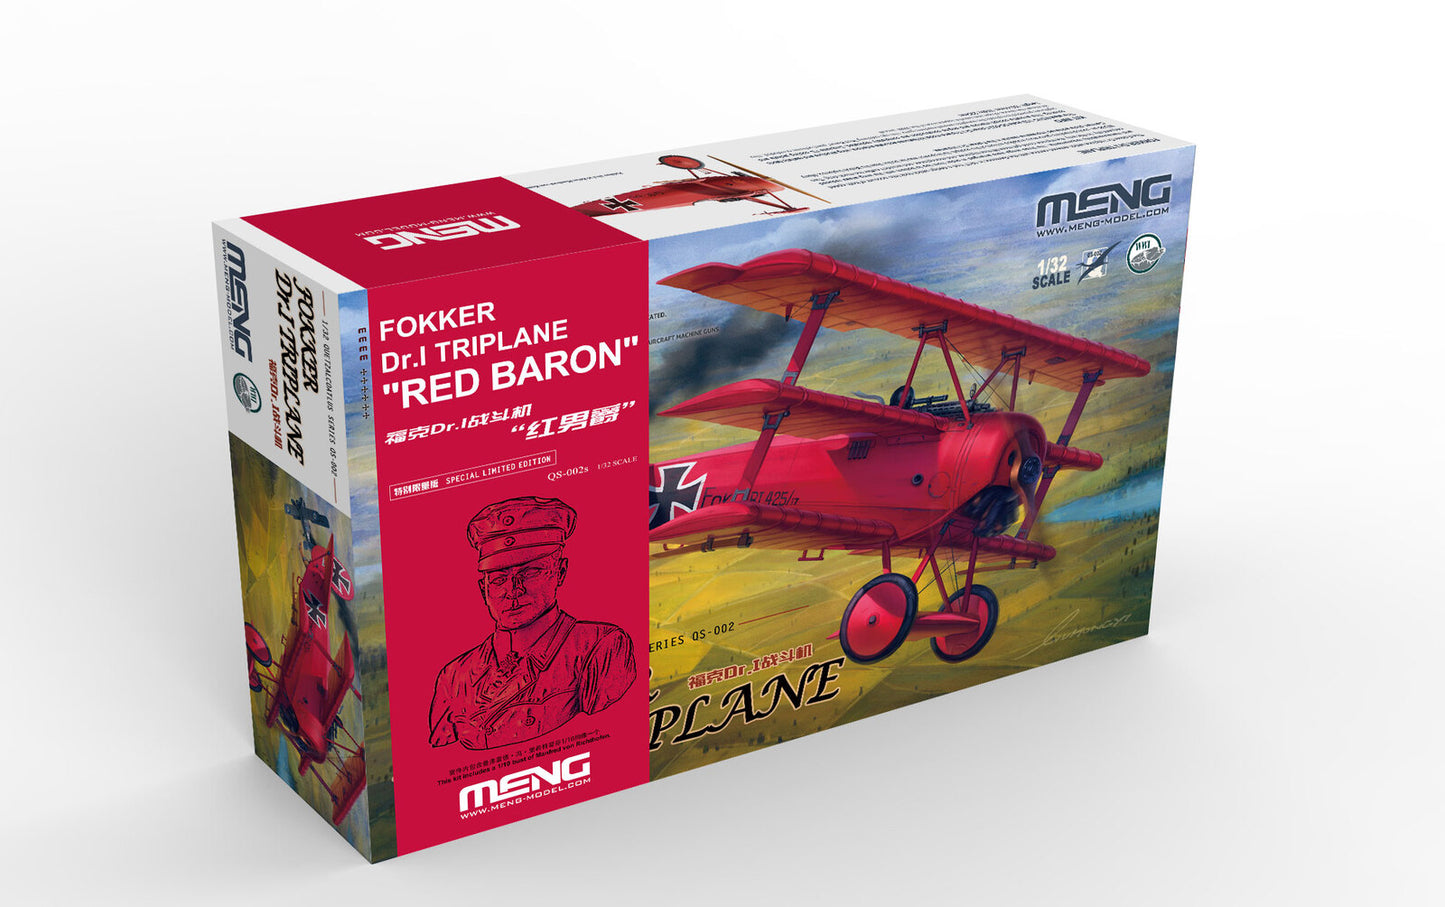 Meng Models QS-002S 1:32 Fokker Dr.I Triplane Red Baron w/Bust Plastic Model Kit